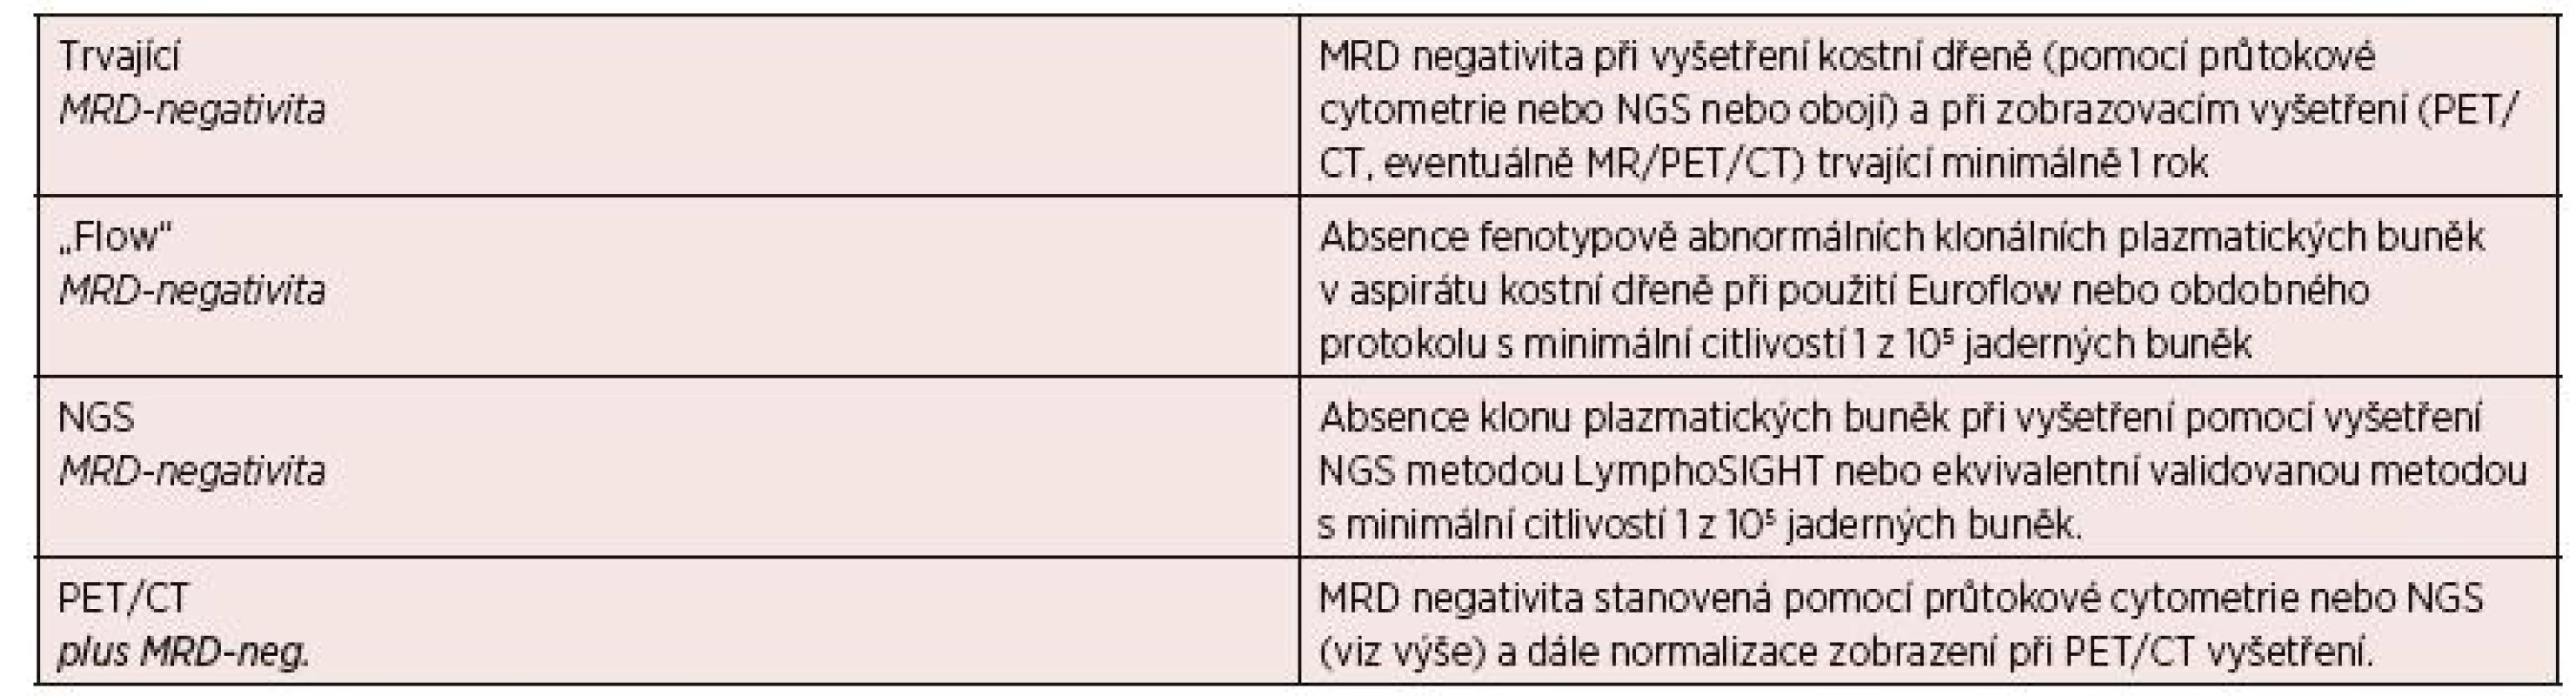 Definice minimální reziduální choroby podle IMWG 2016